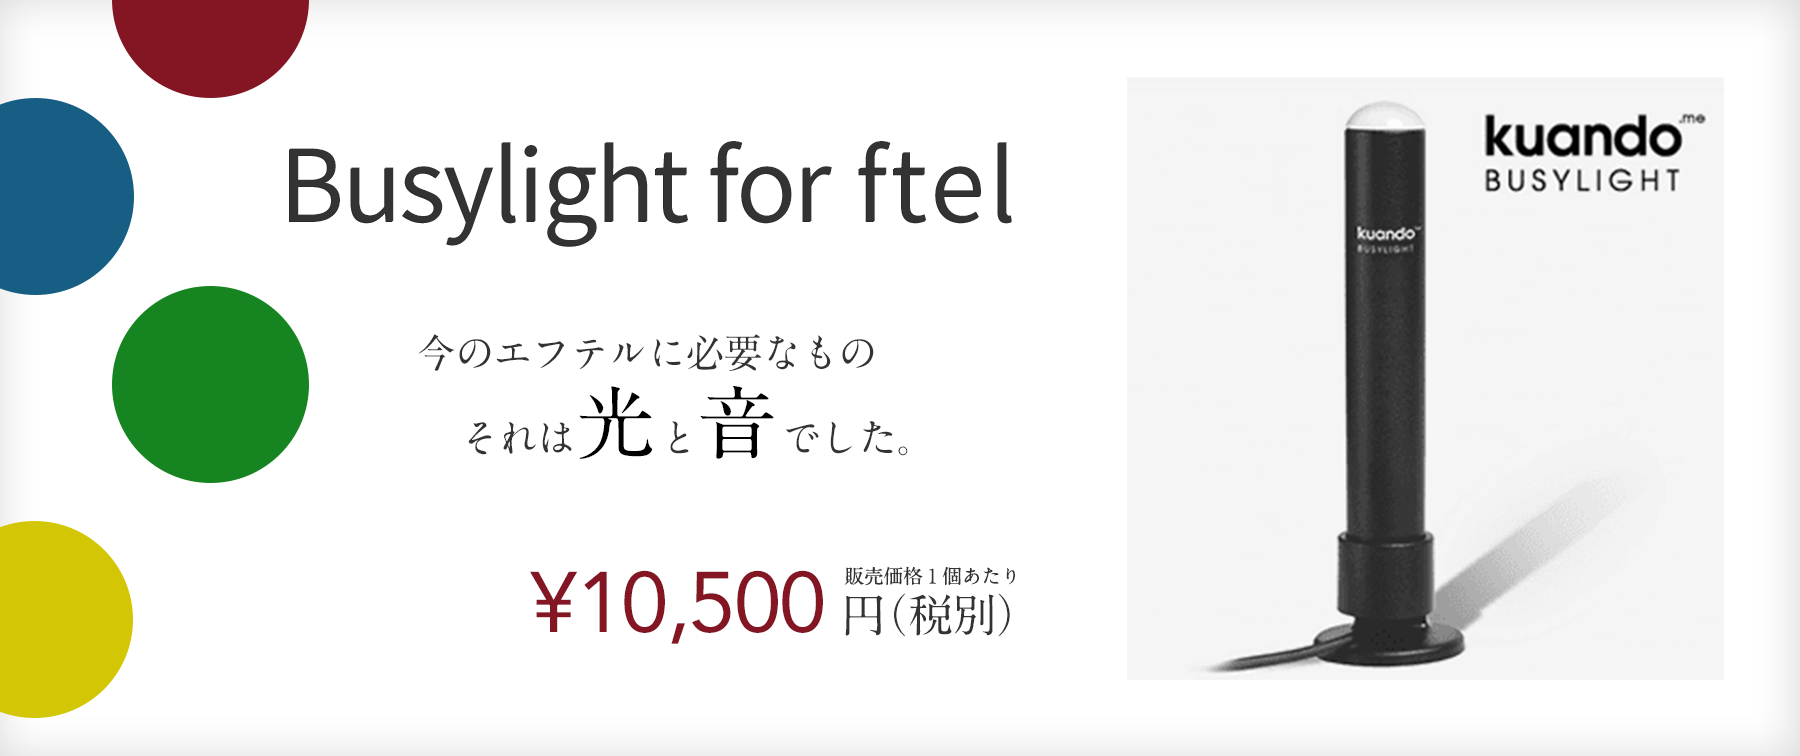 【Busylight for ftel】【販売価格】１個あたり ¥10,500円（税別）